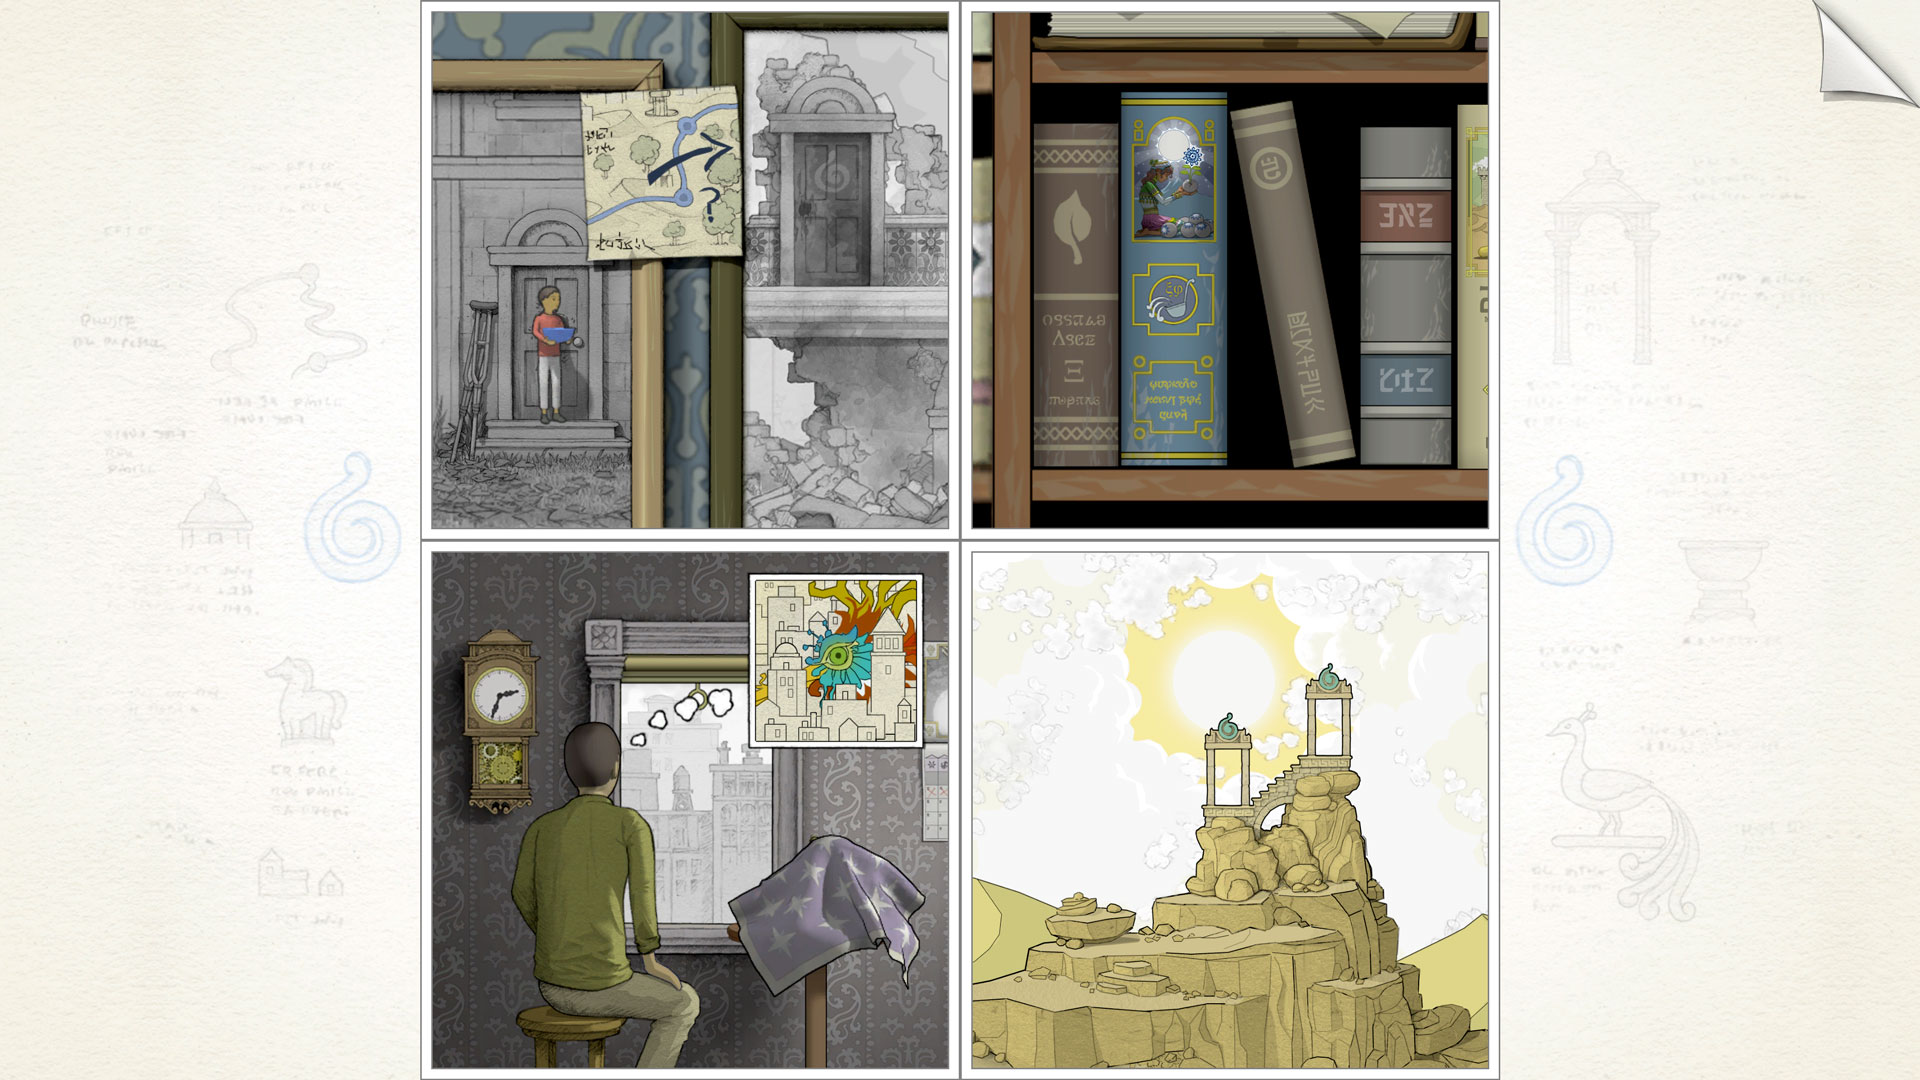 بہترین موبائل پہیلی کھیل: گوروگوا۔ امیج میں چار عجیب و غریب تصاویر دکھائی گئیں۔